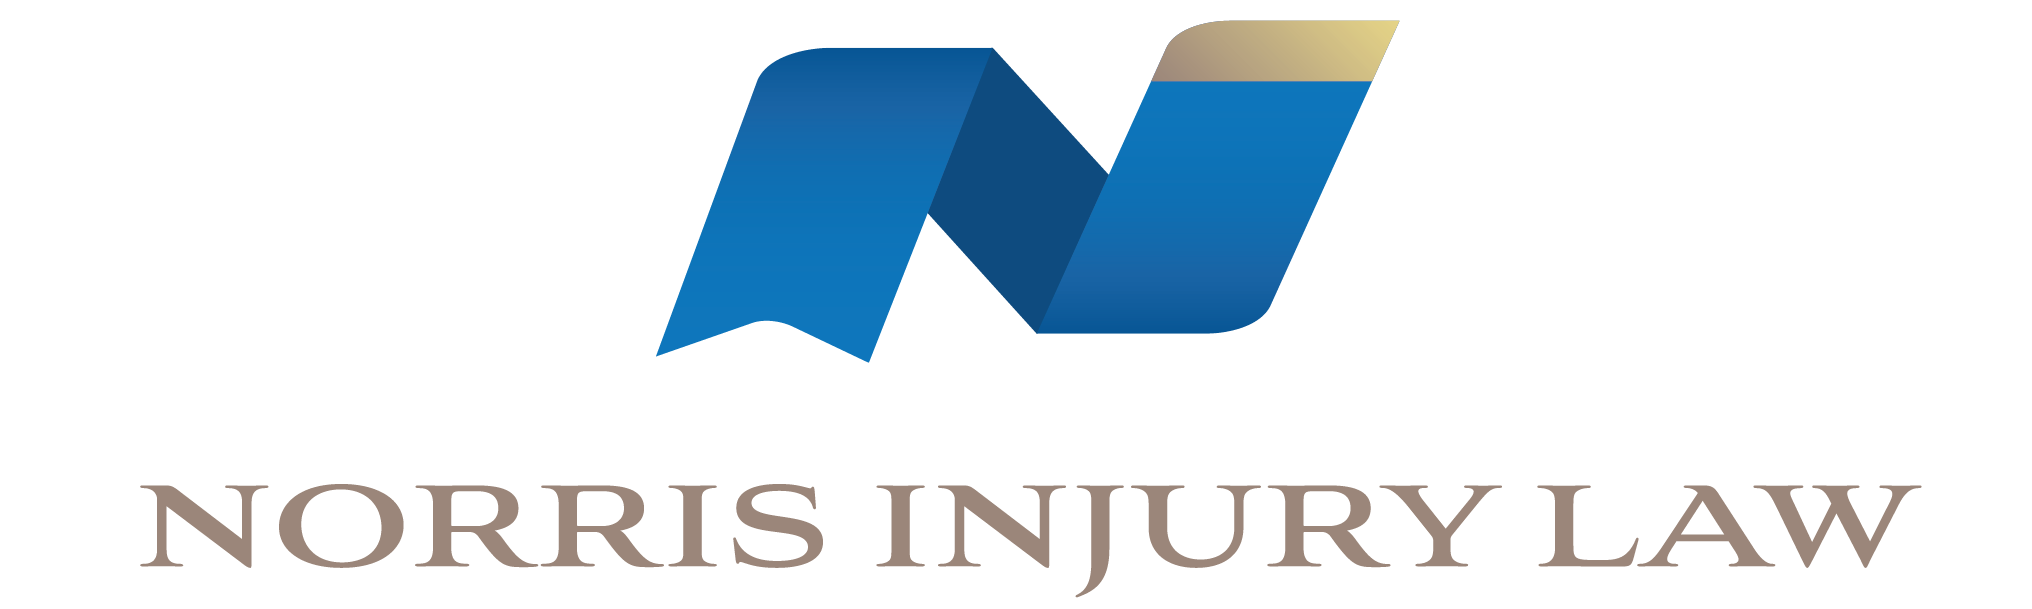 Norris Injury Law